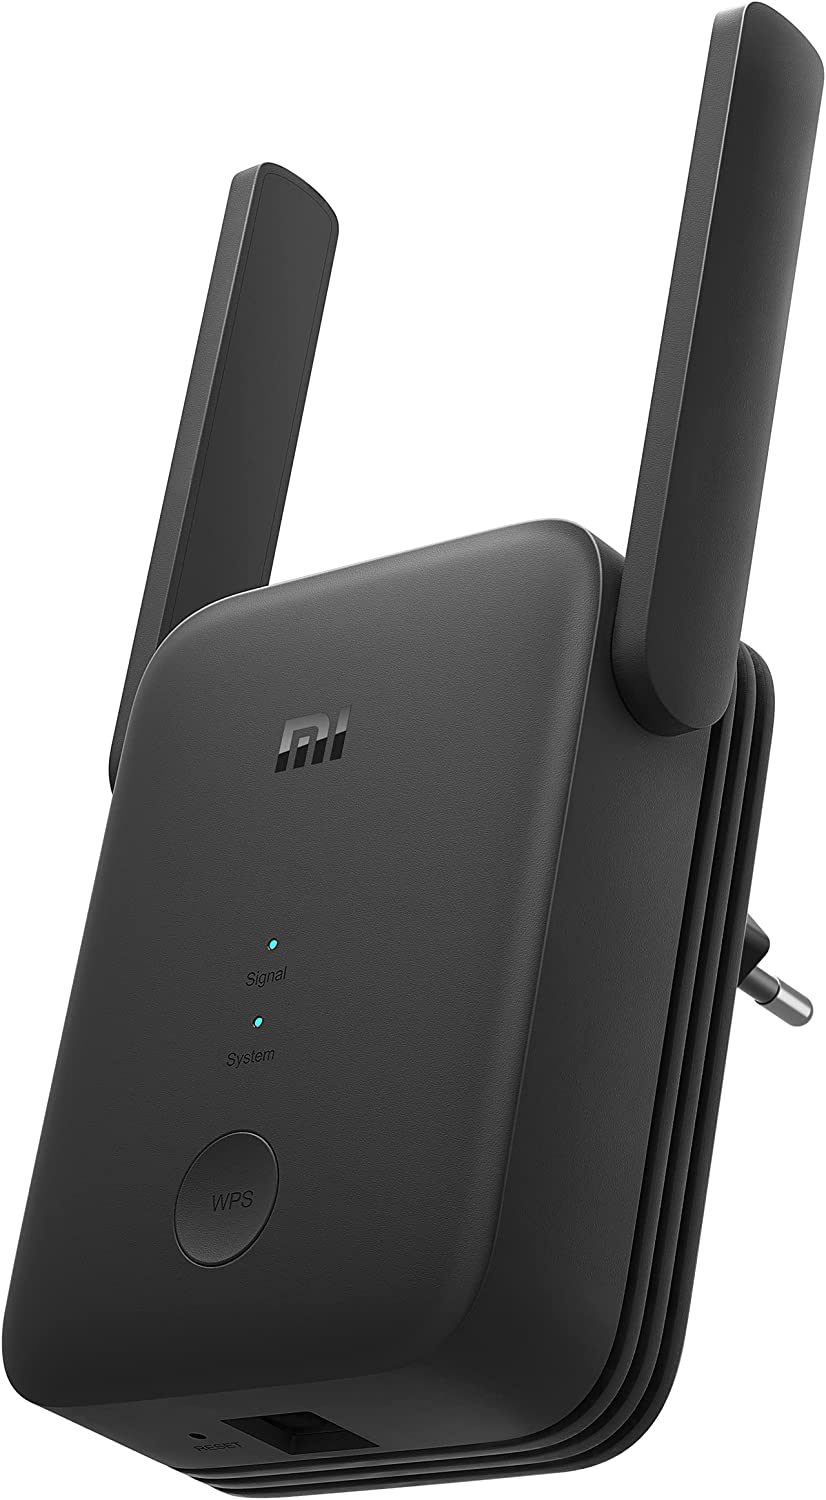 Ripetitore Wi-Fi di Xiaomi in offerta a 24,90 euro - Melablog